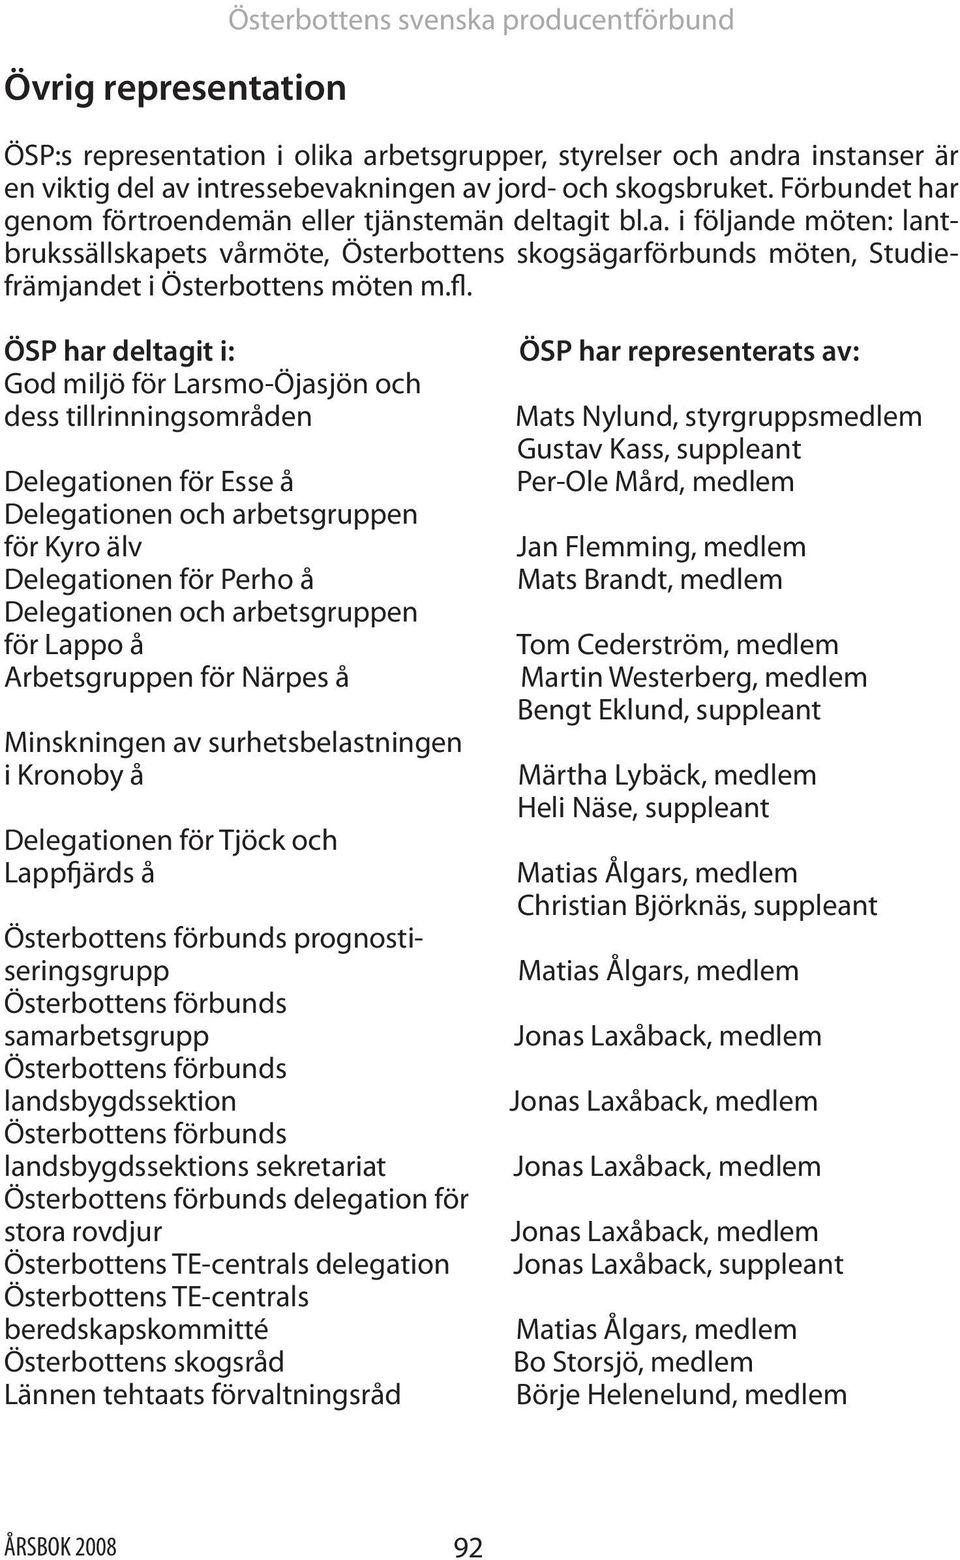 ÖSP har deltagit i: God miljö för Larsmo-Öjasjön och dess tillrinningsområden Delegationen för Esse å Delegationen och arbetsgruppen för Kyro älv Delegationen för Perho å Delegationen och